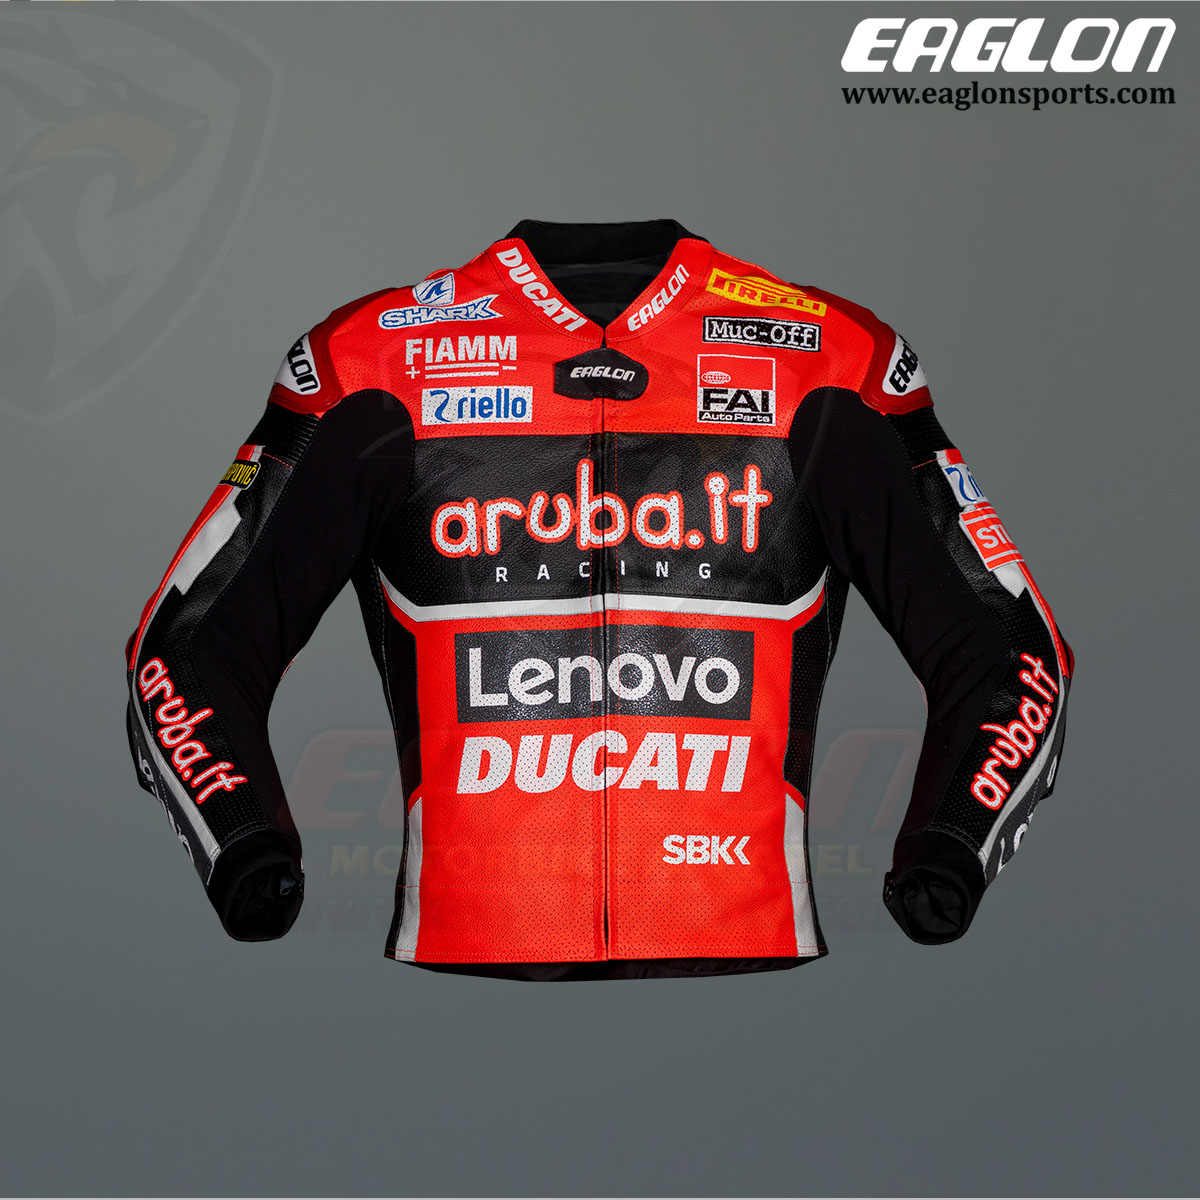 Scott-Reddings-Ducati-Aruba.it-SBK-2020-Leather-Riding-Jacket